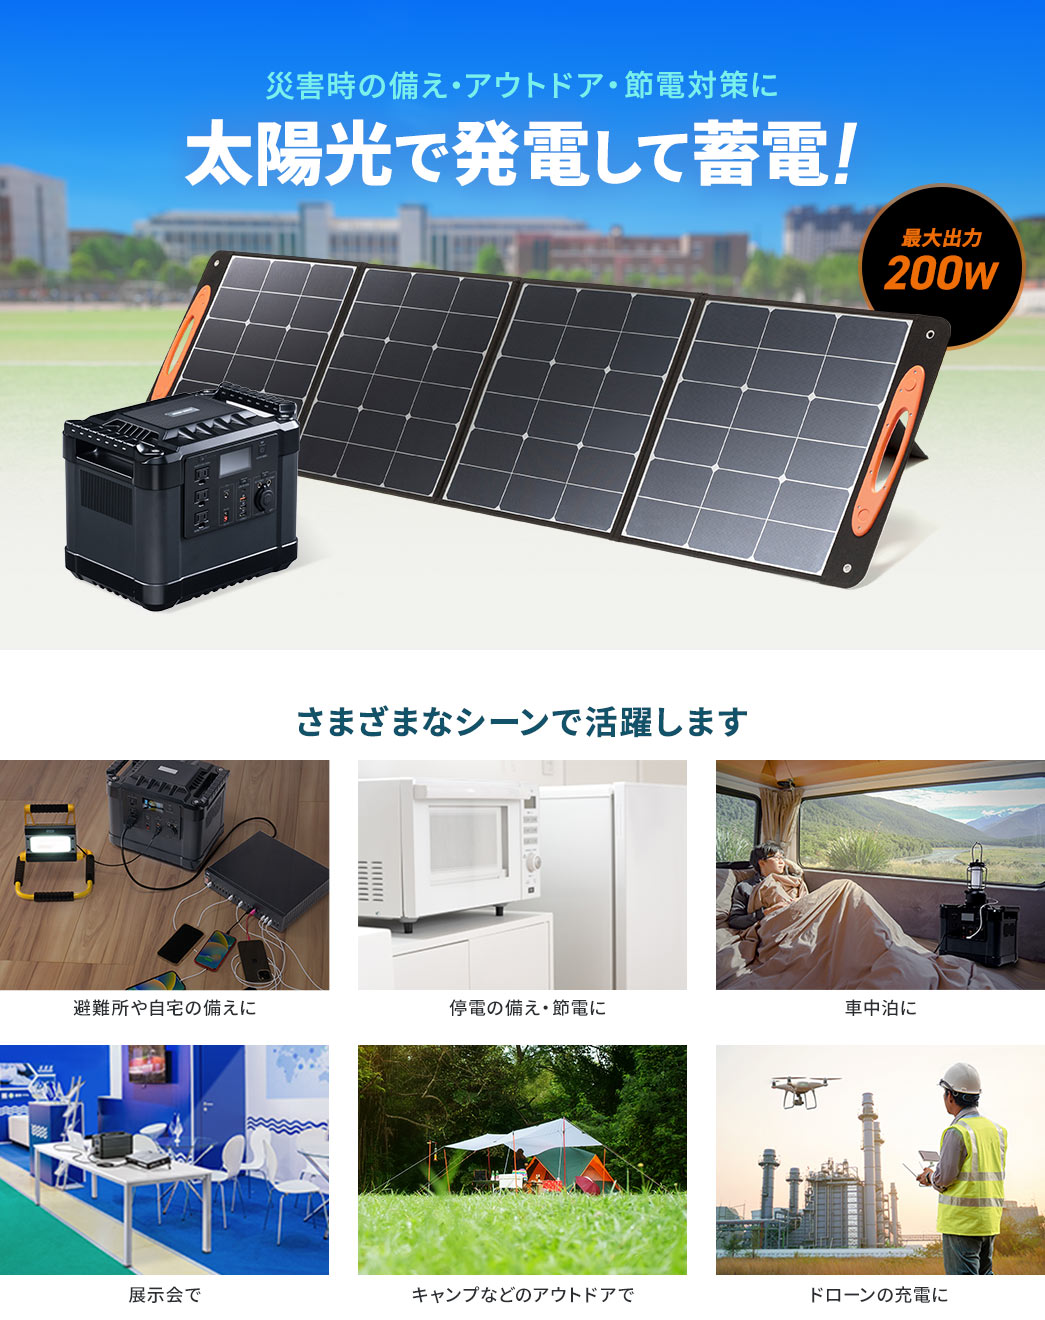 災害時の備え・アウトドア・節電対策に 太陽光で発電蓄電!